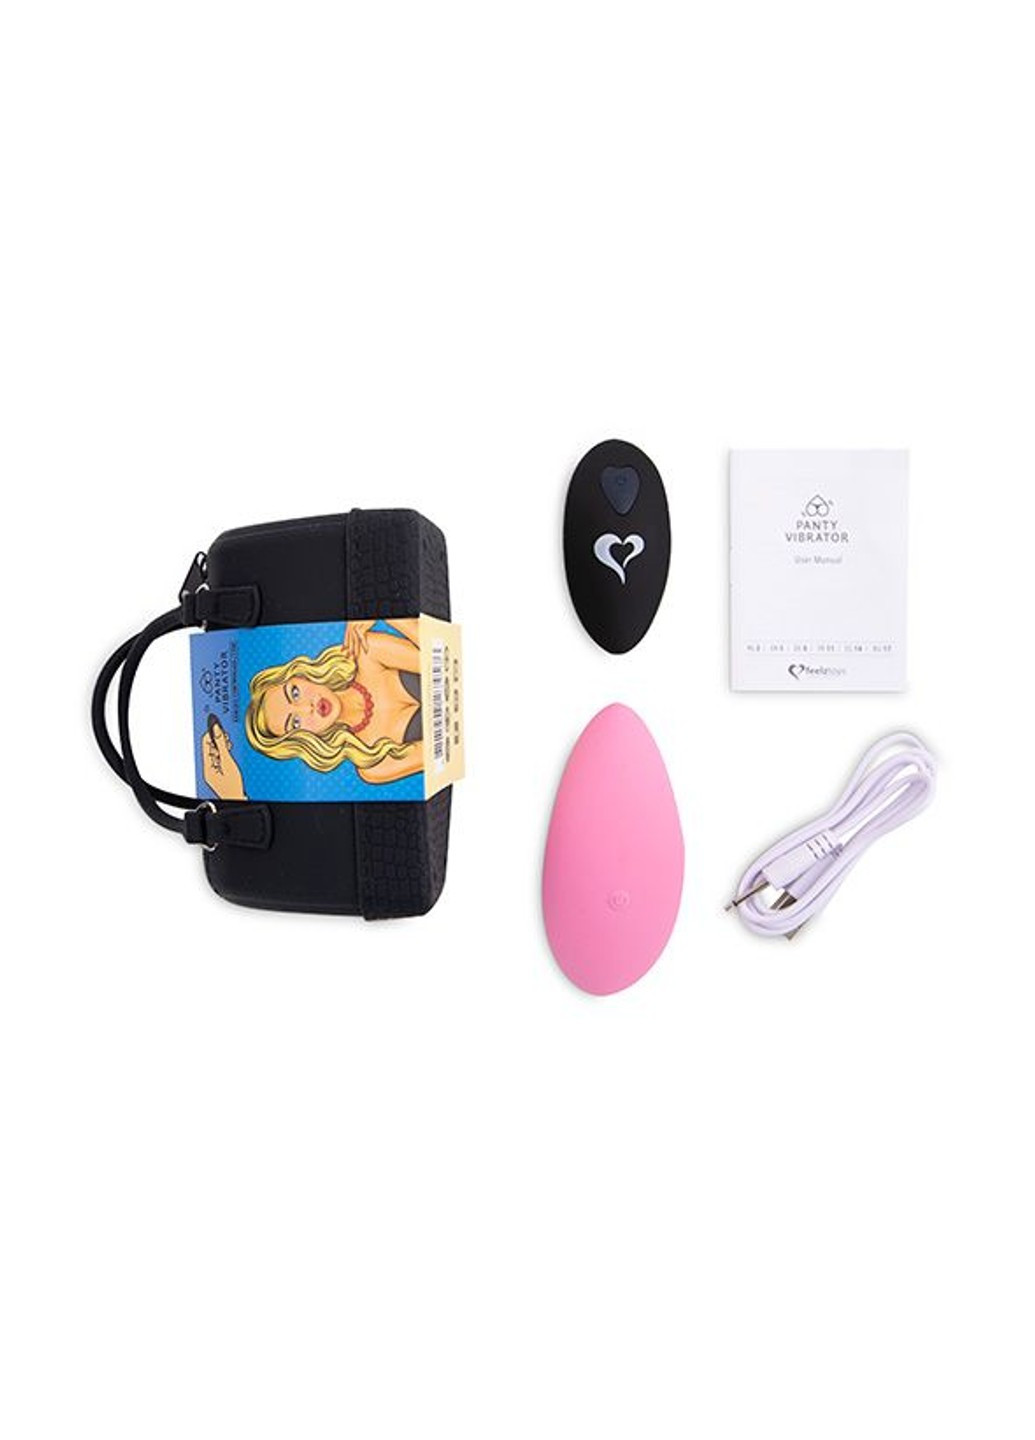 Вибратор в трусики Panty Vibrator Pink с пультом ДУ, 6 режимов работы, сумочка-чехол FeelzToys (277236723)